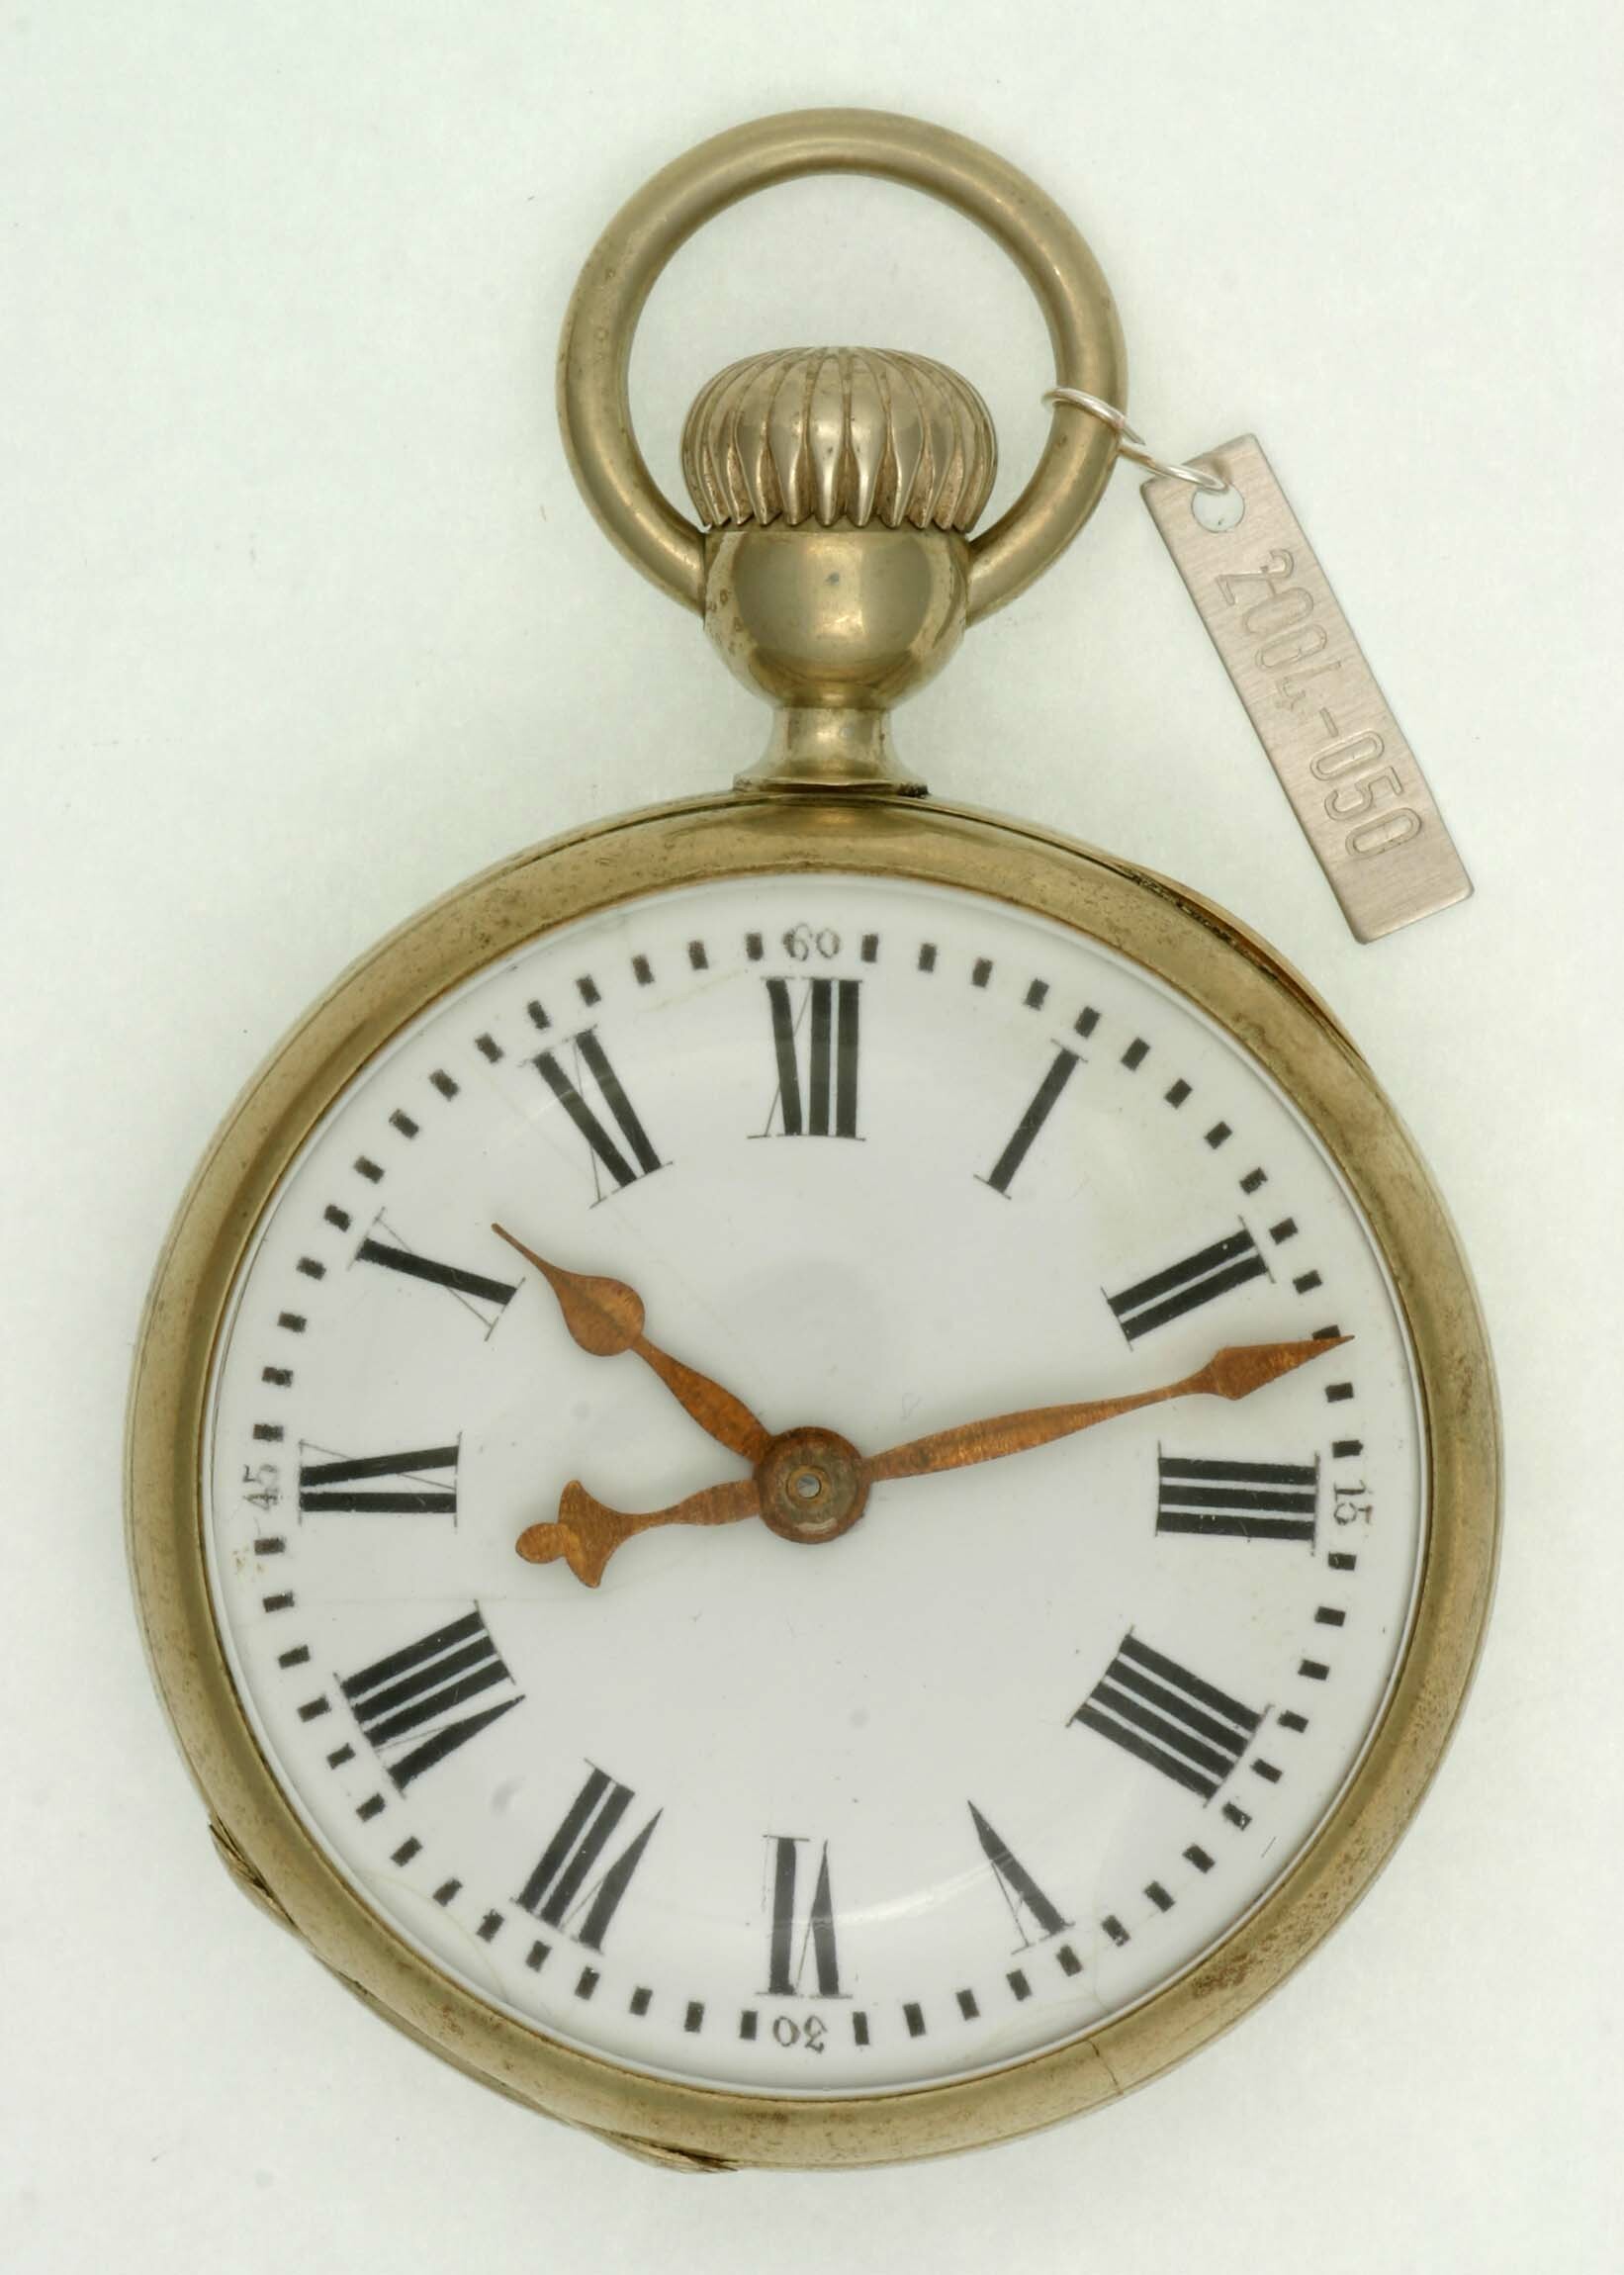 Taschenuhr "La Proletaire", Georges Fréderic Roskopf, La Chaux-de-Fonds, um 1870 (Deutsches Uhrenmuseum CC BY-SA)